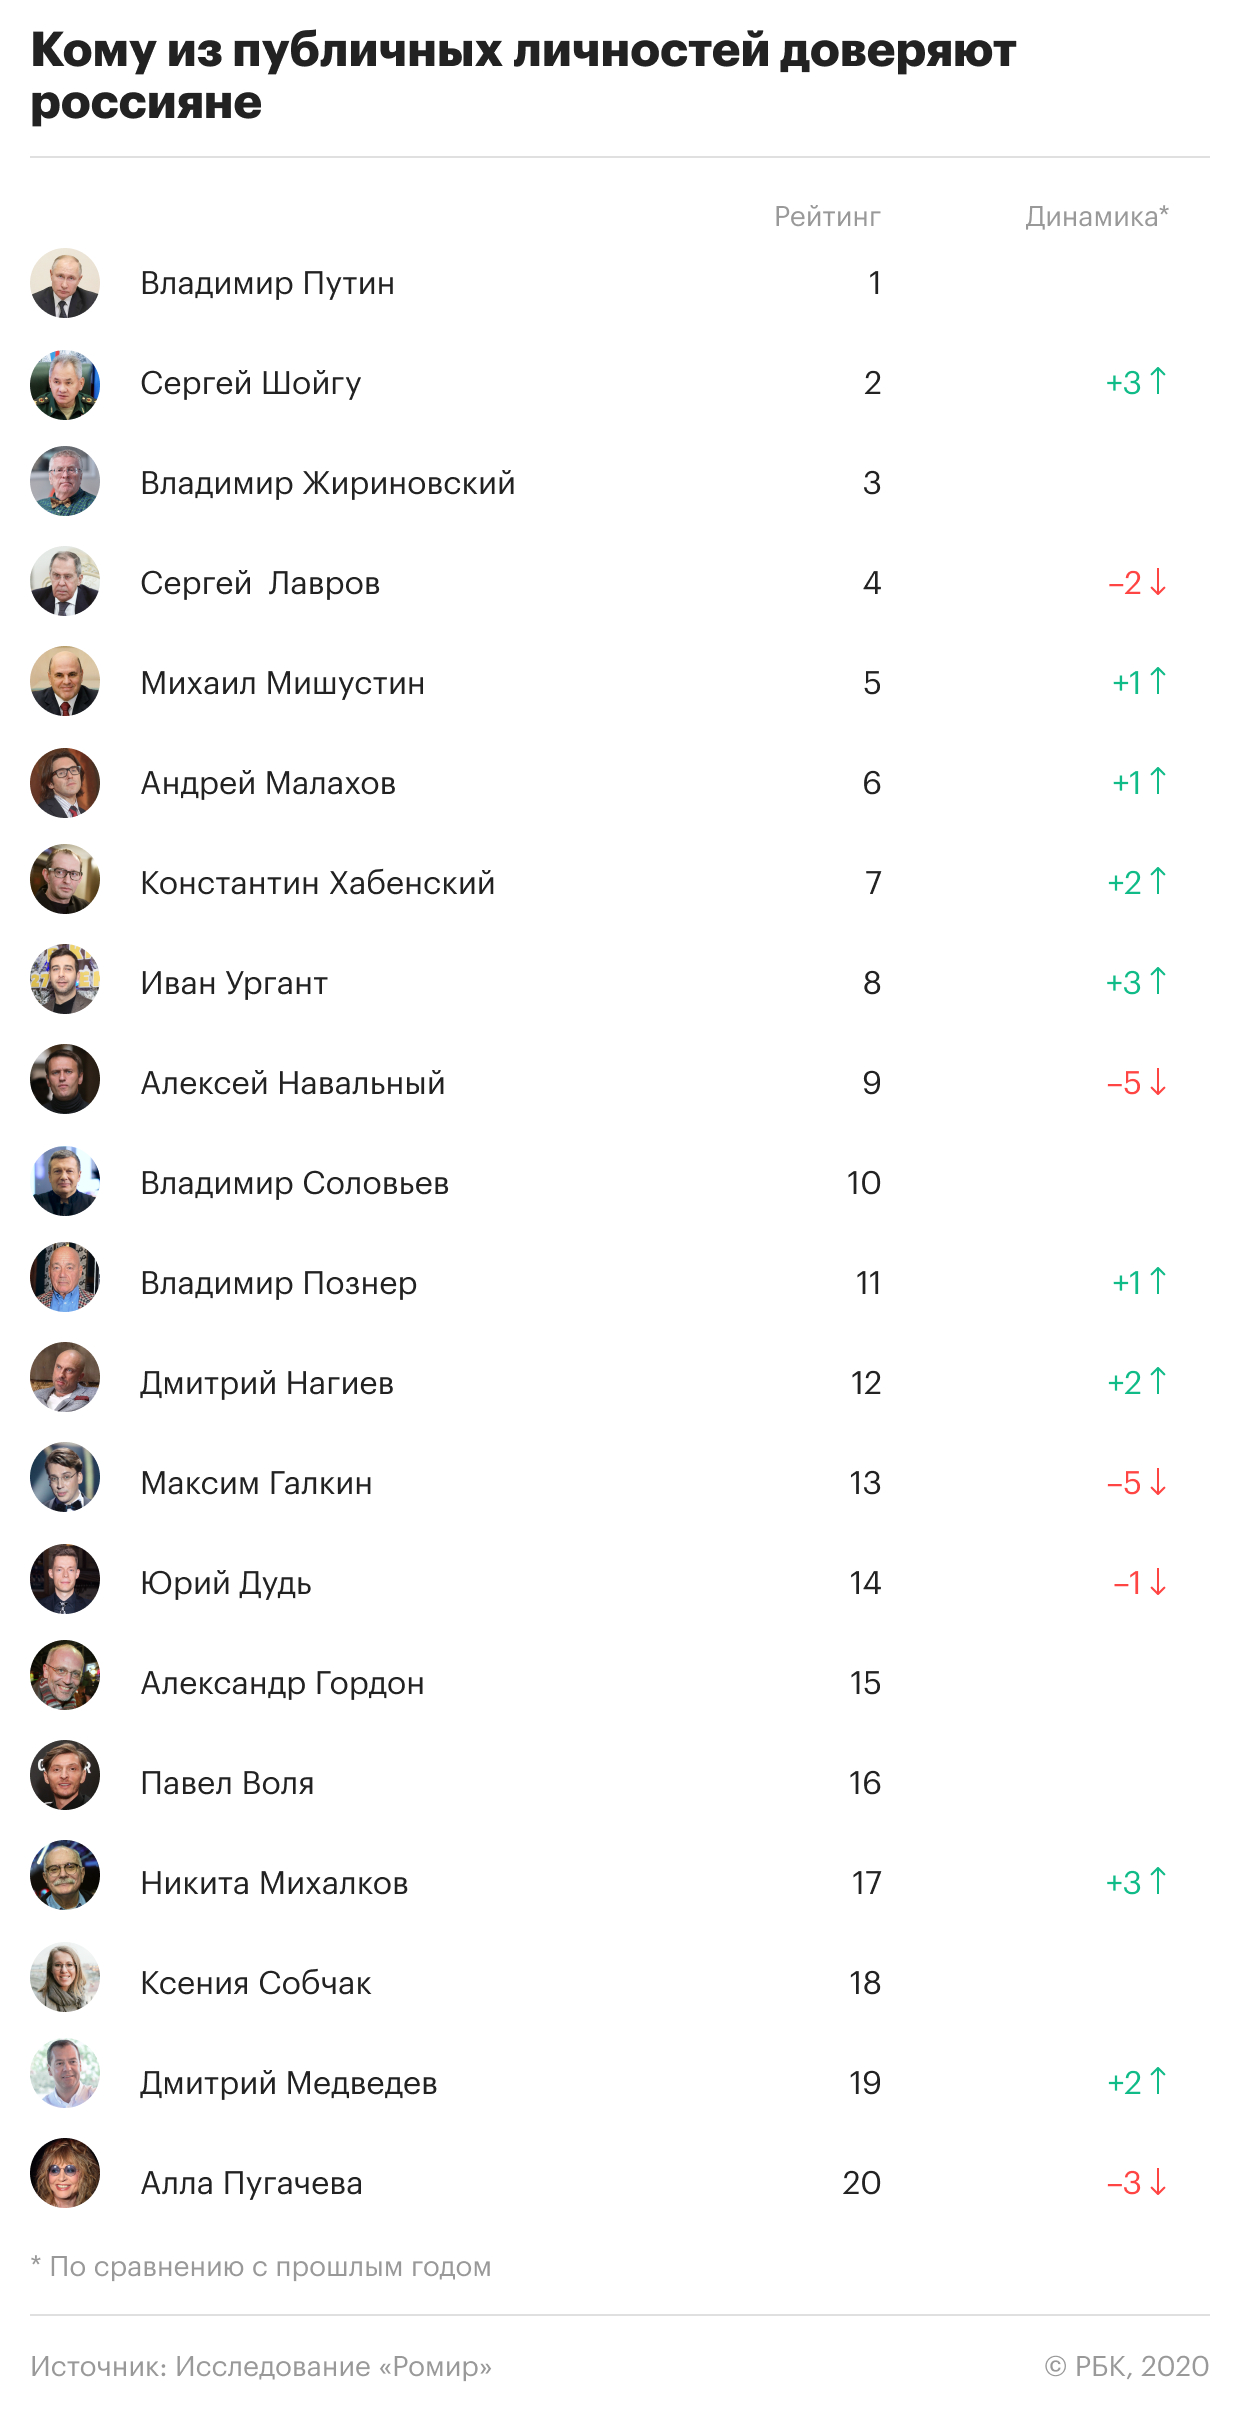 Кому доверяют россияне во время второй волны пандемии. Инфографика